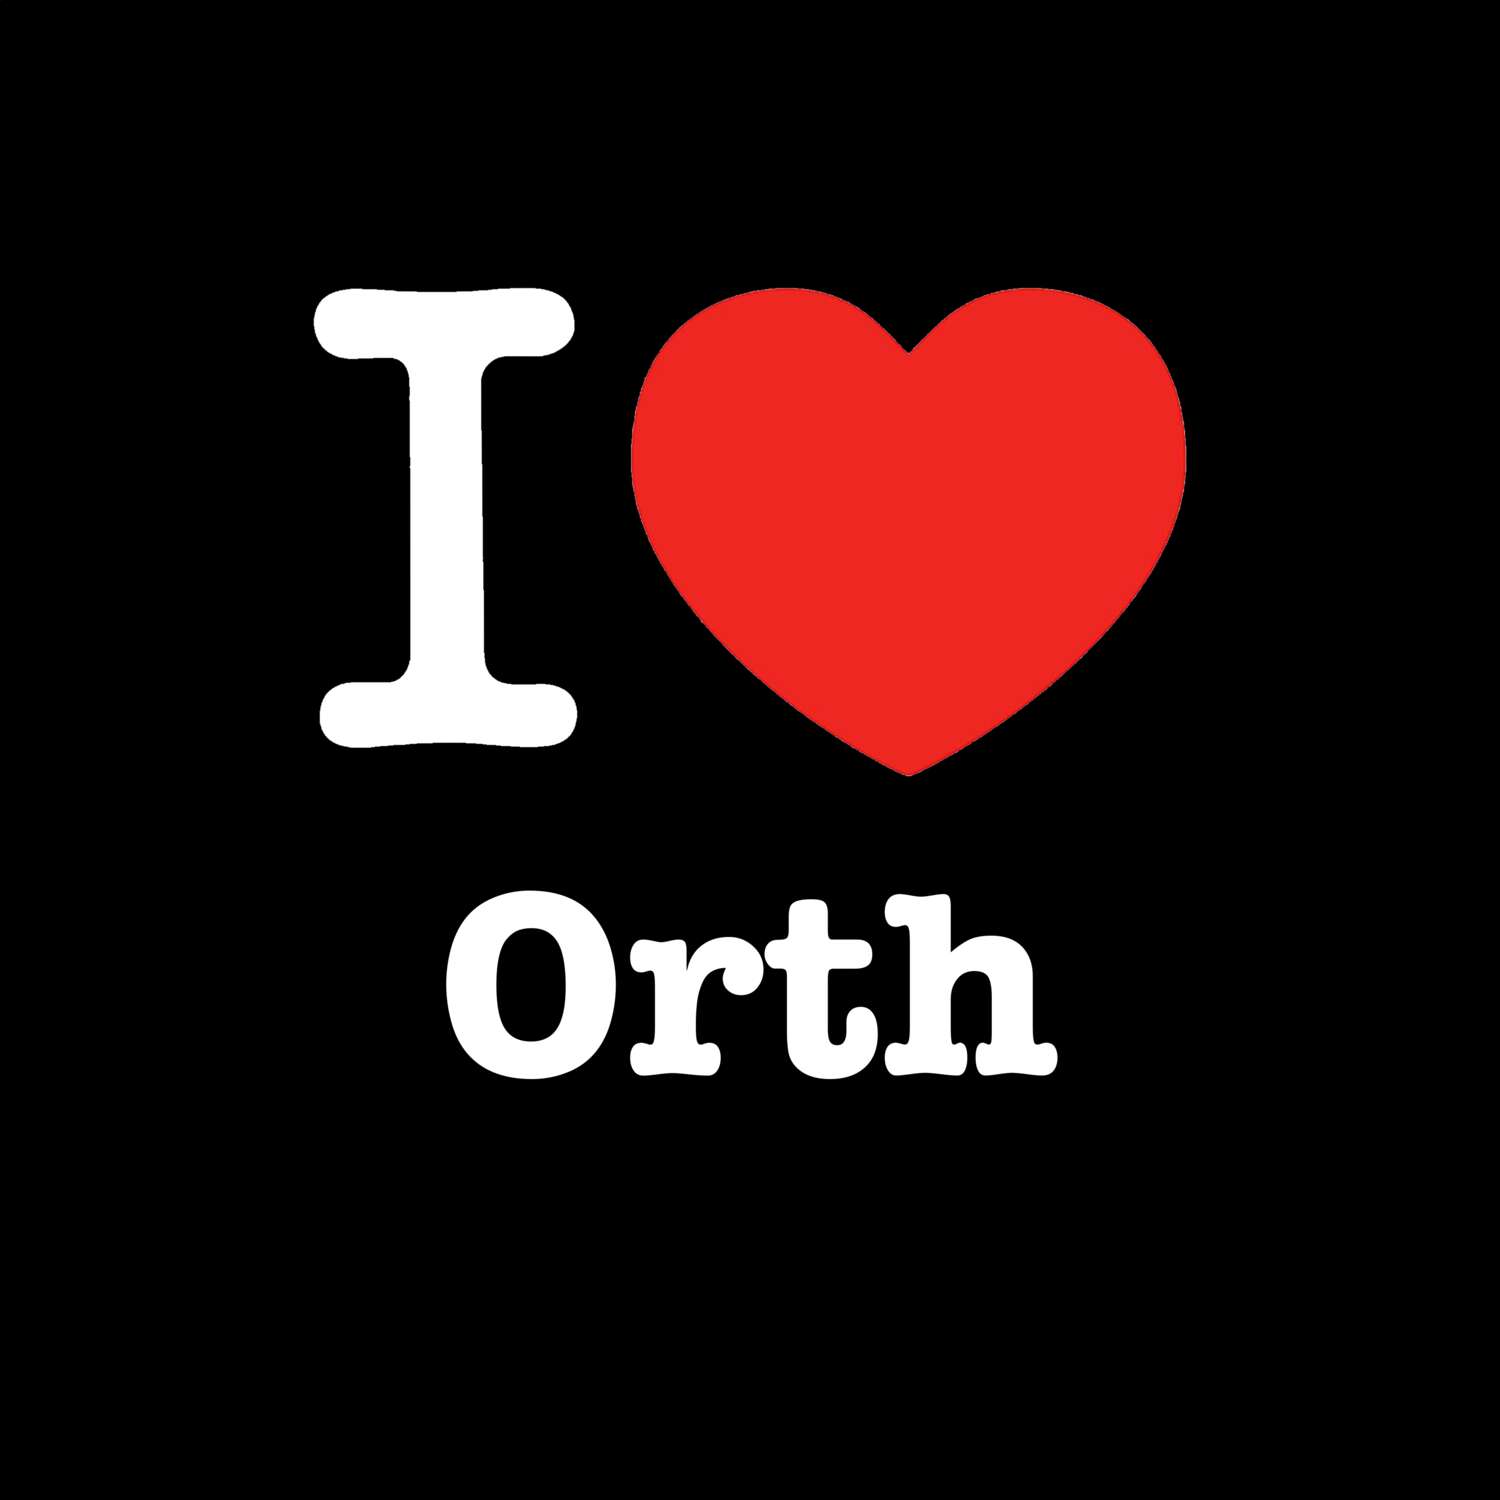 Orth T-Shirt »I love«